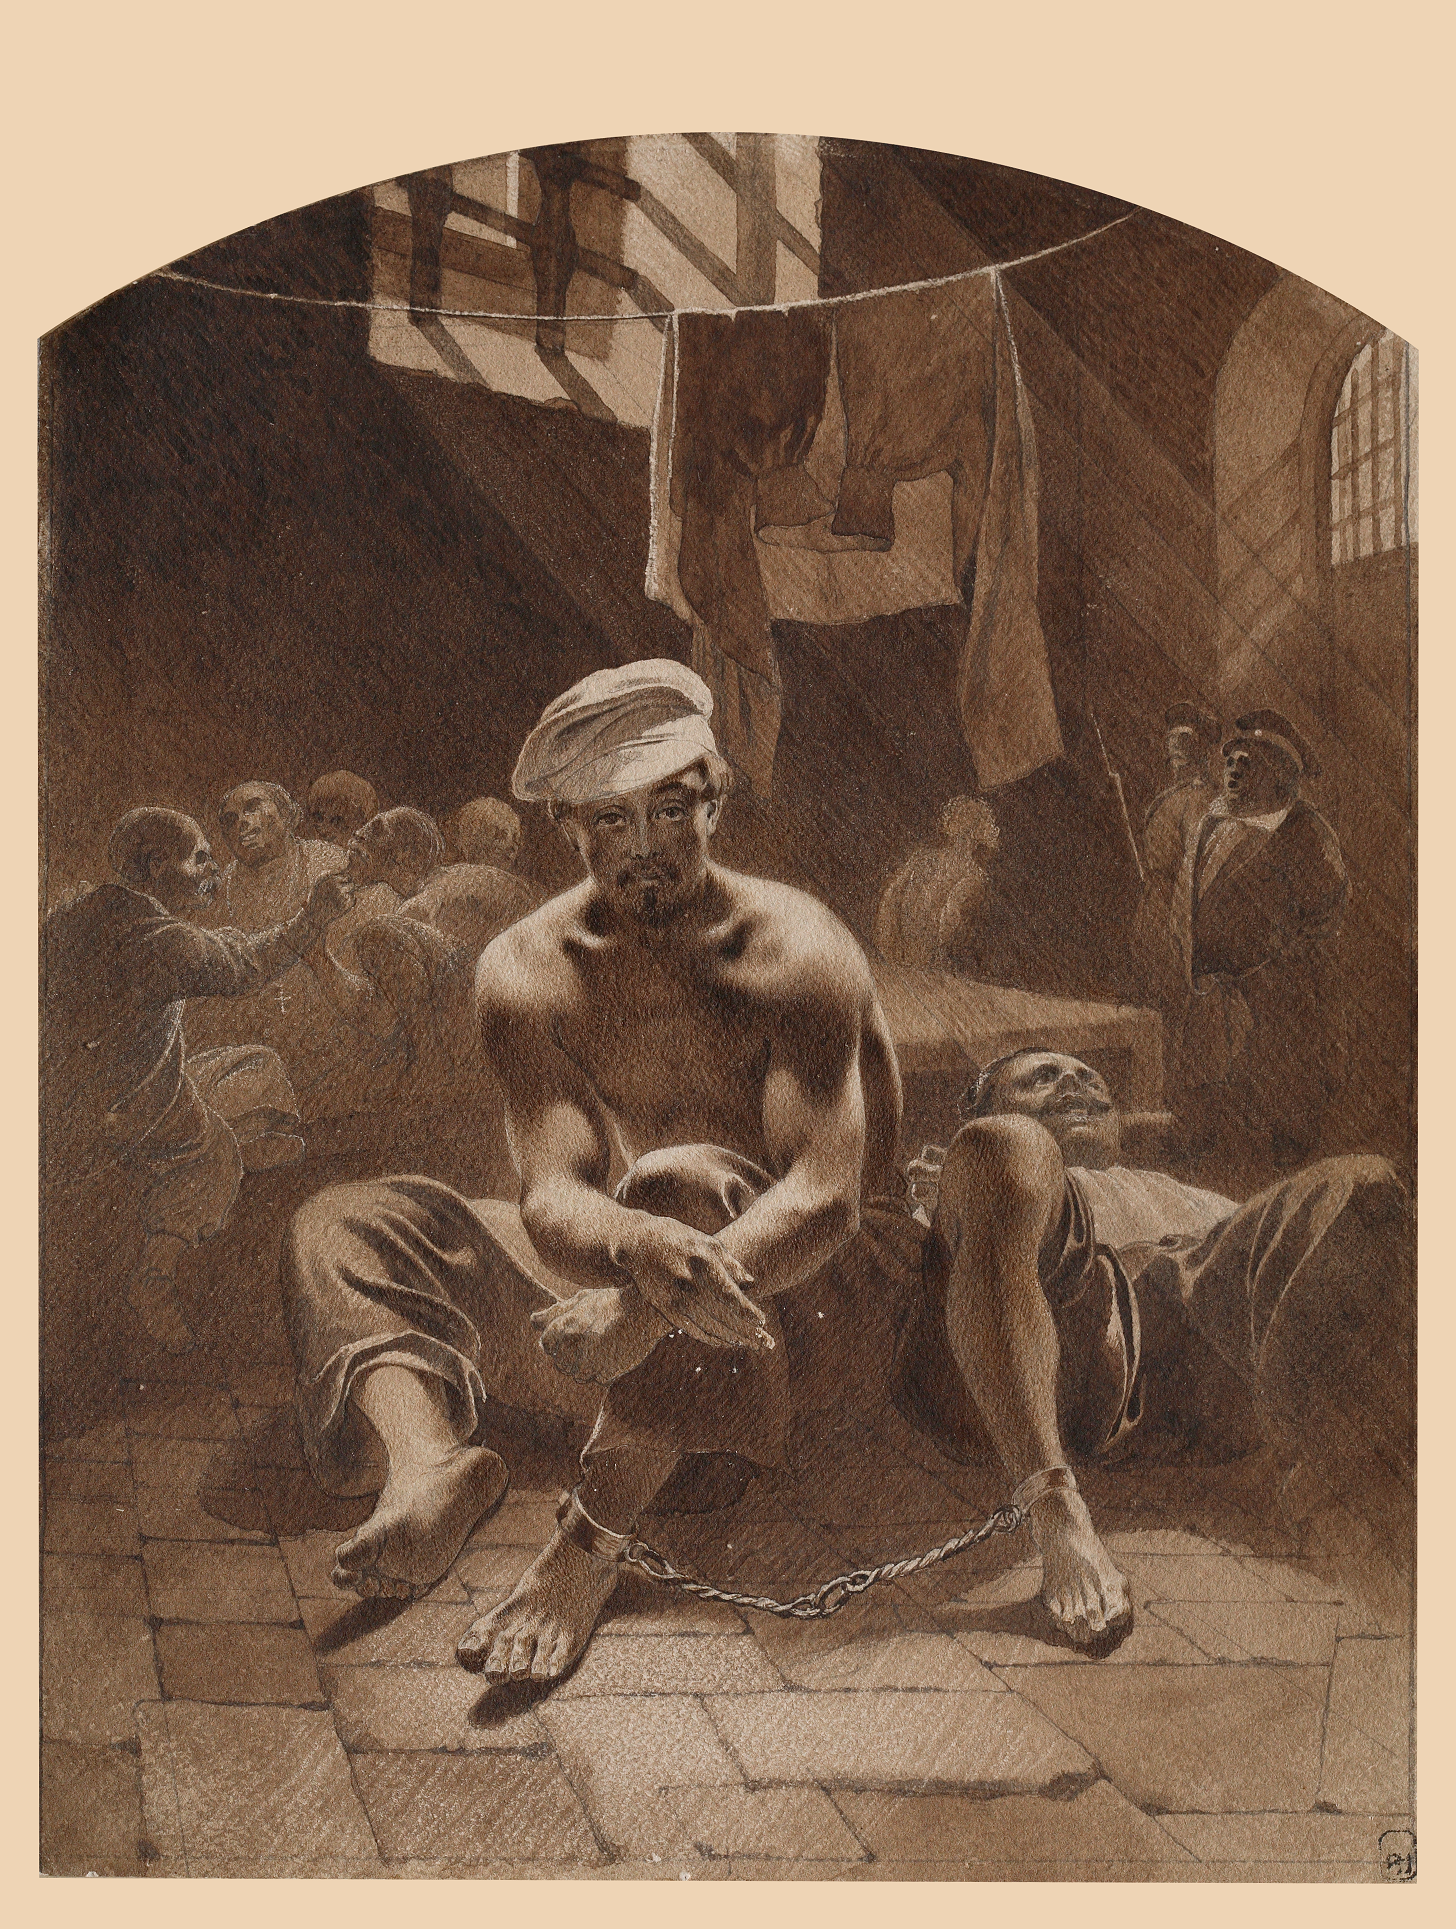 In Prison, 1856-1857, ink, bistre 